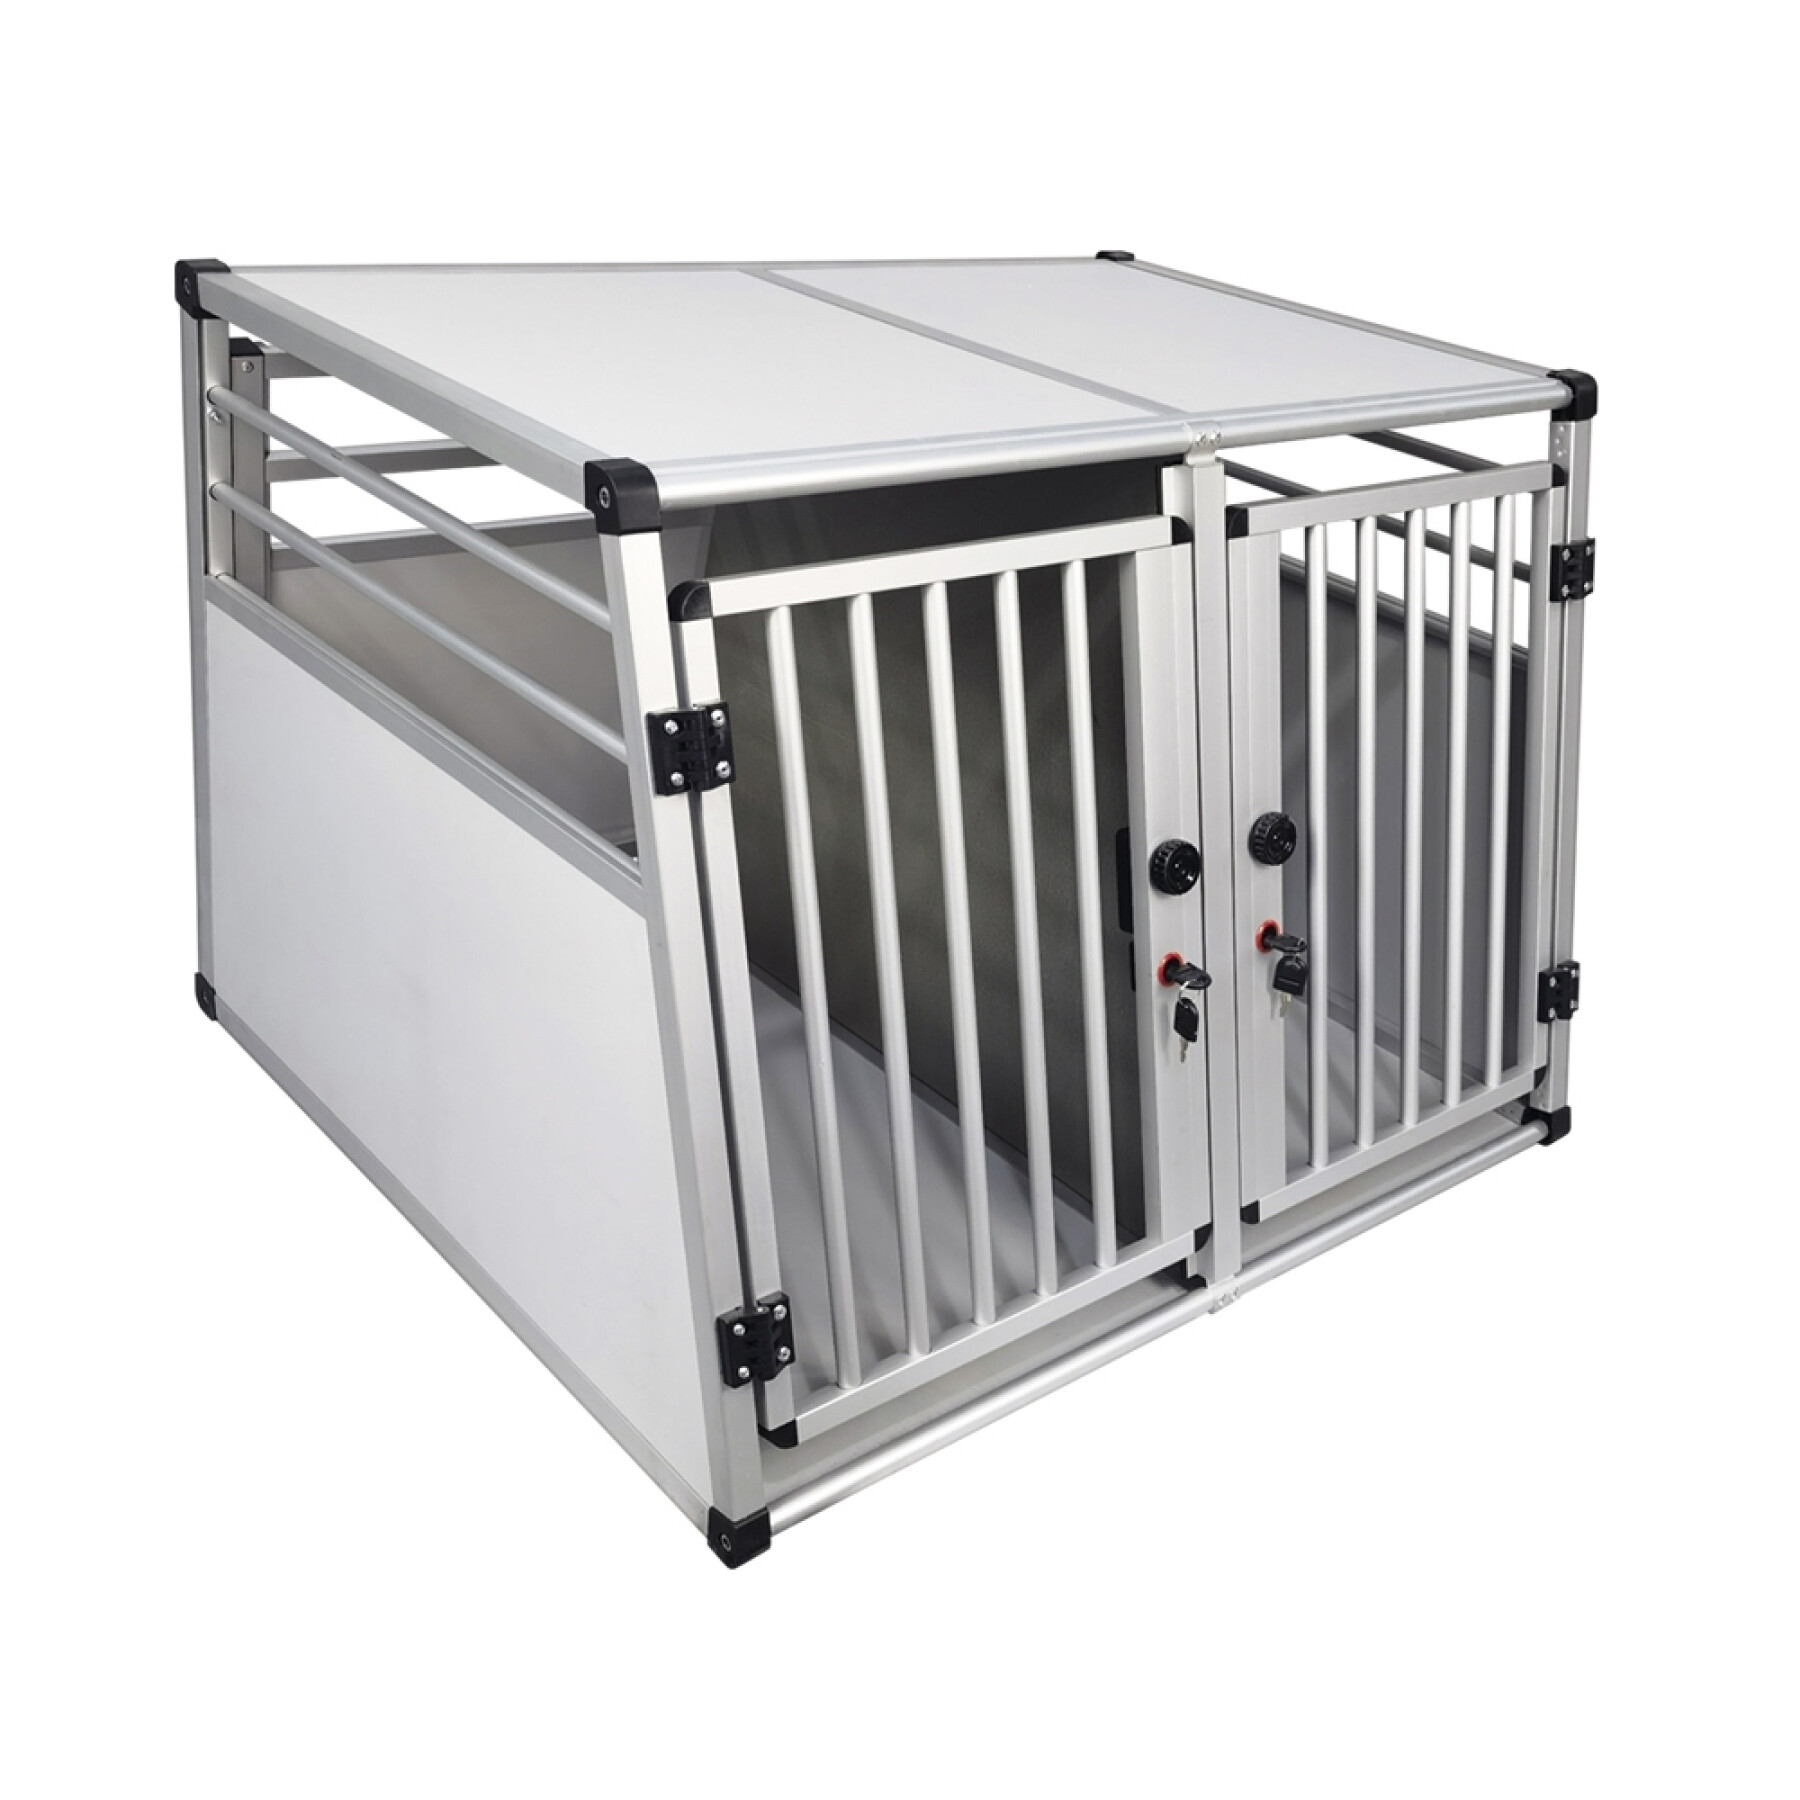 Cage de transport double en Aluminium pour deux chiens. Caisses de